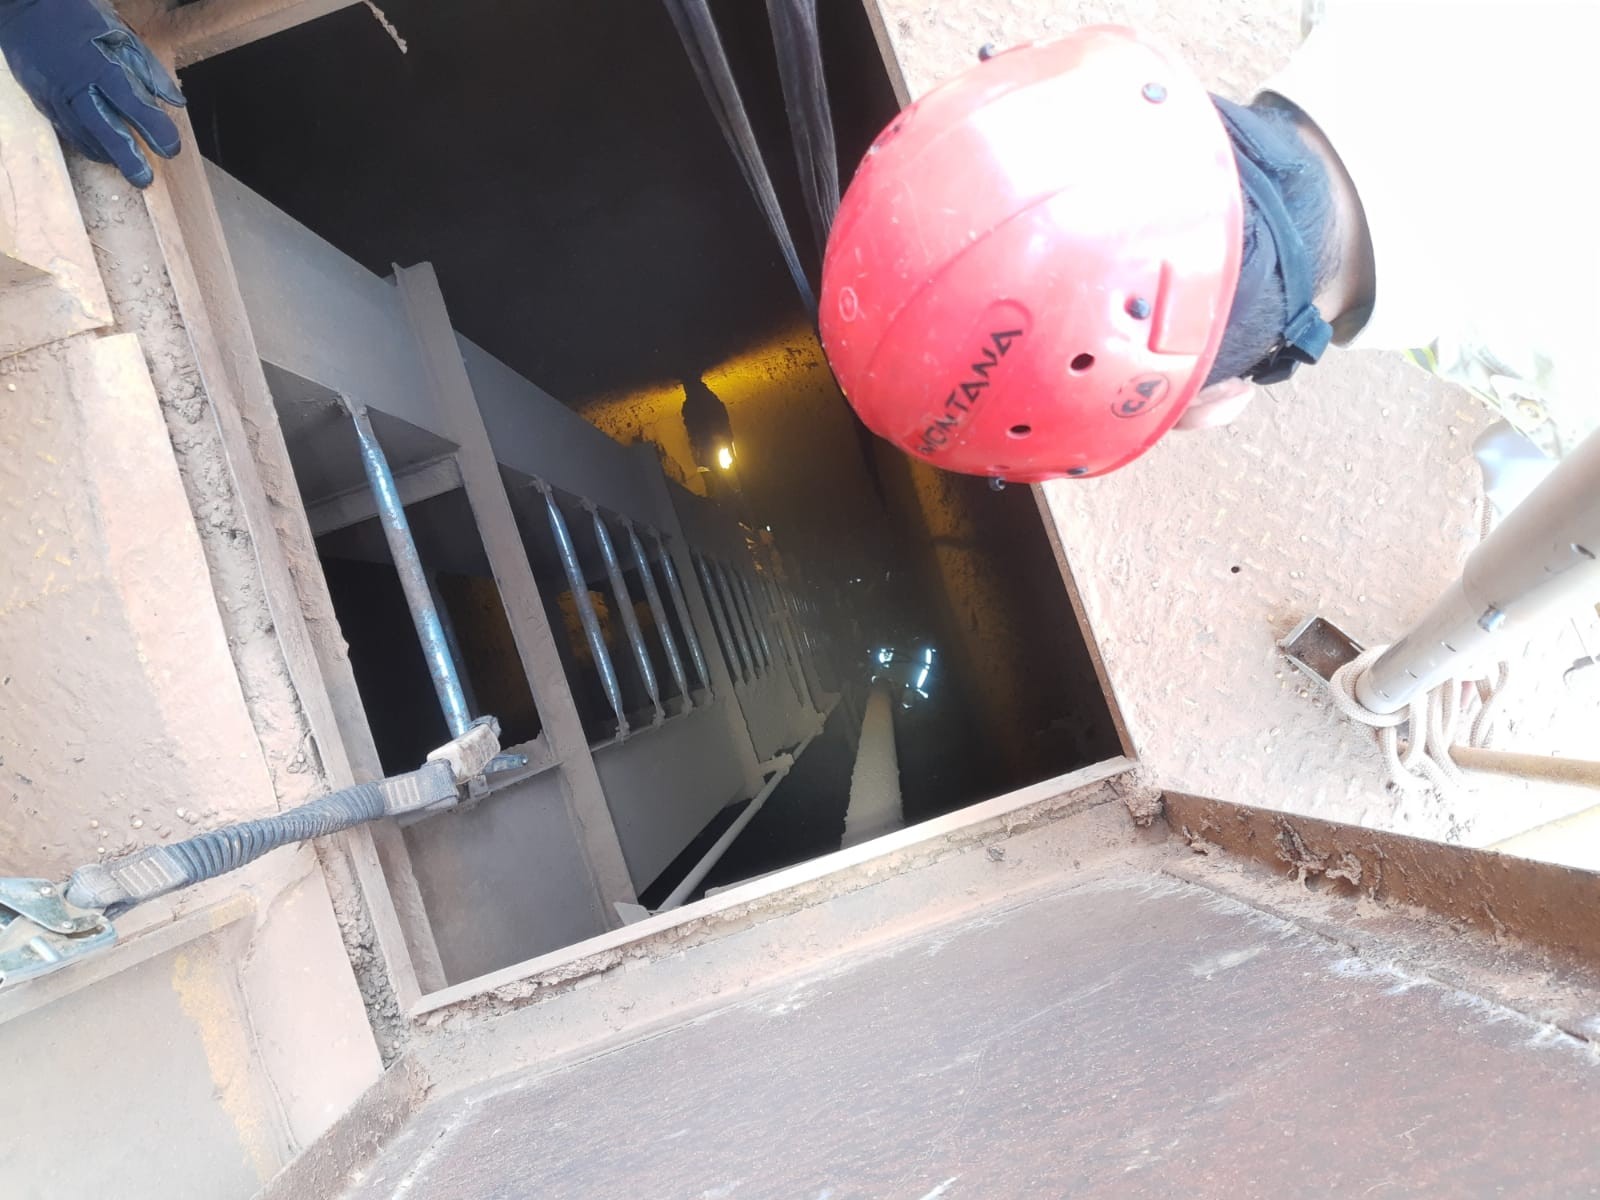 Trabalhador cai de altura de 8 metros em fosso de elevador de indústria, em Maringá